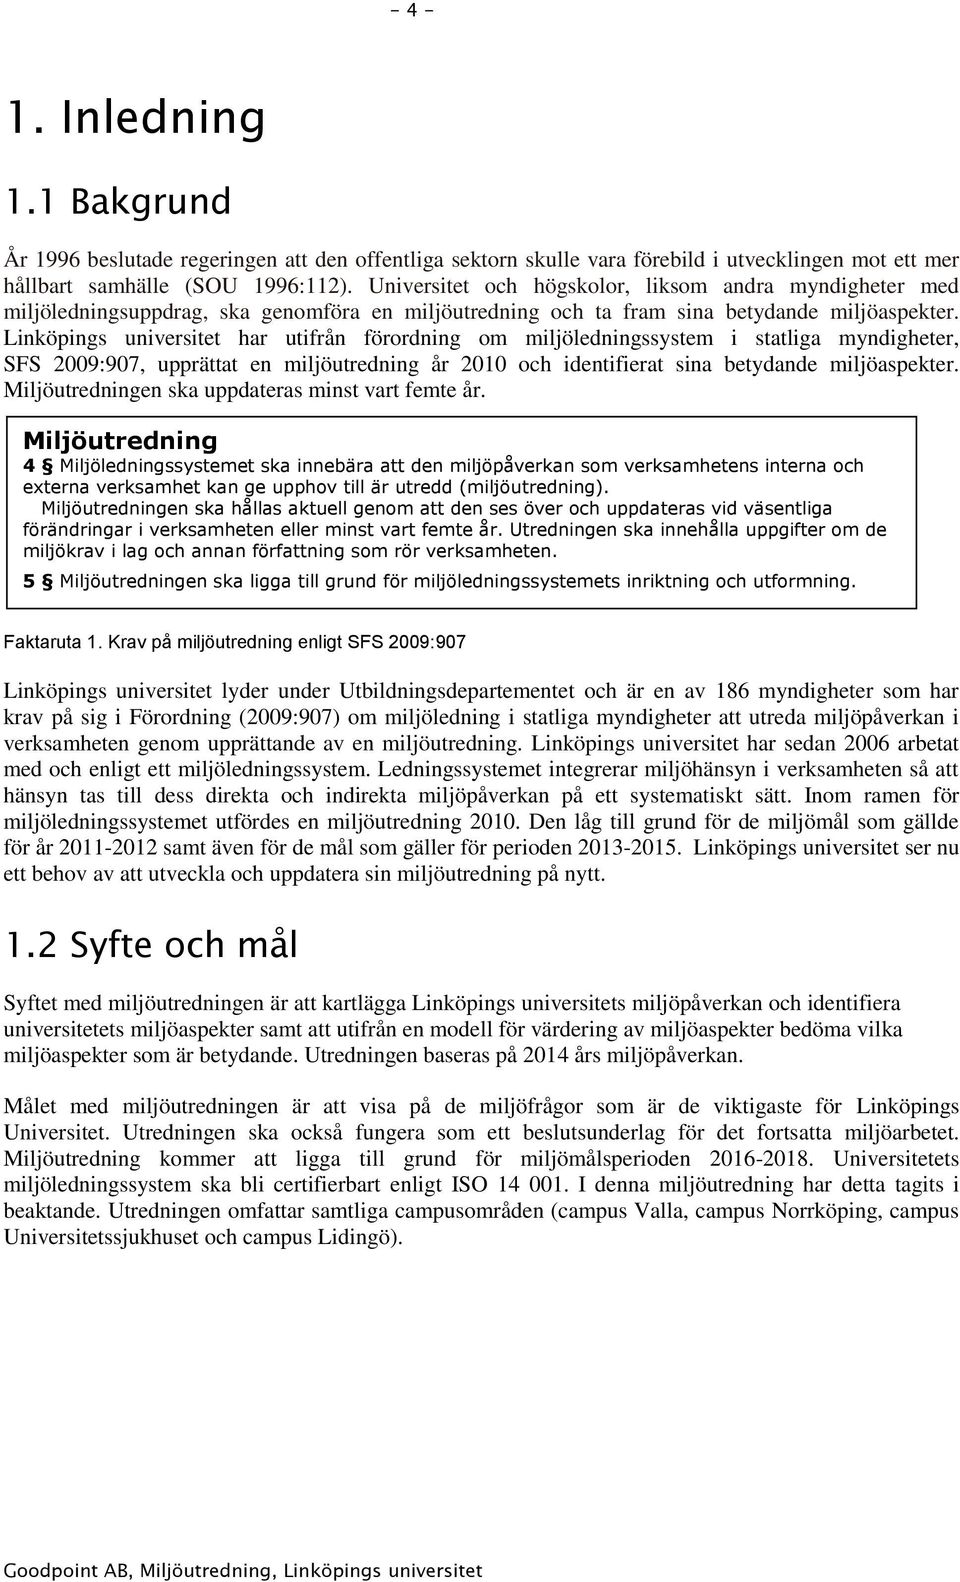 Linköpings universitet har utifrån förordning om miljöledningssystem i statliga myndigheter, SFS 2009:907, upprättat en miljöutredning år 2010 och identifierat sina betydande miljöaspekter.